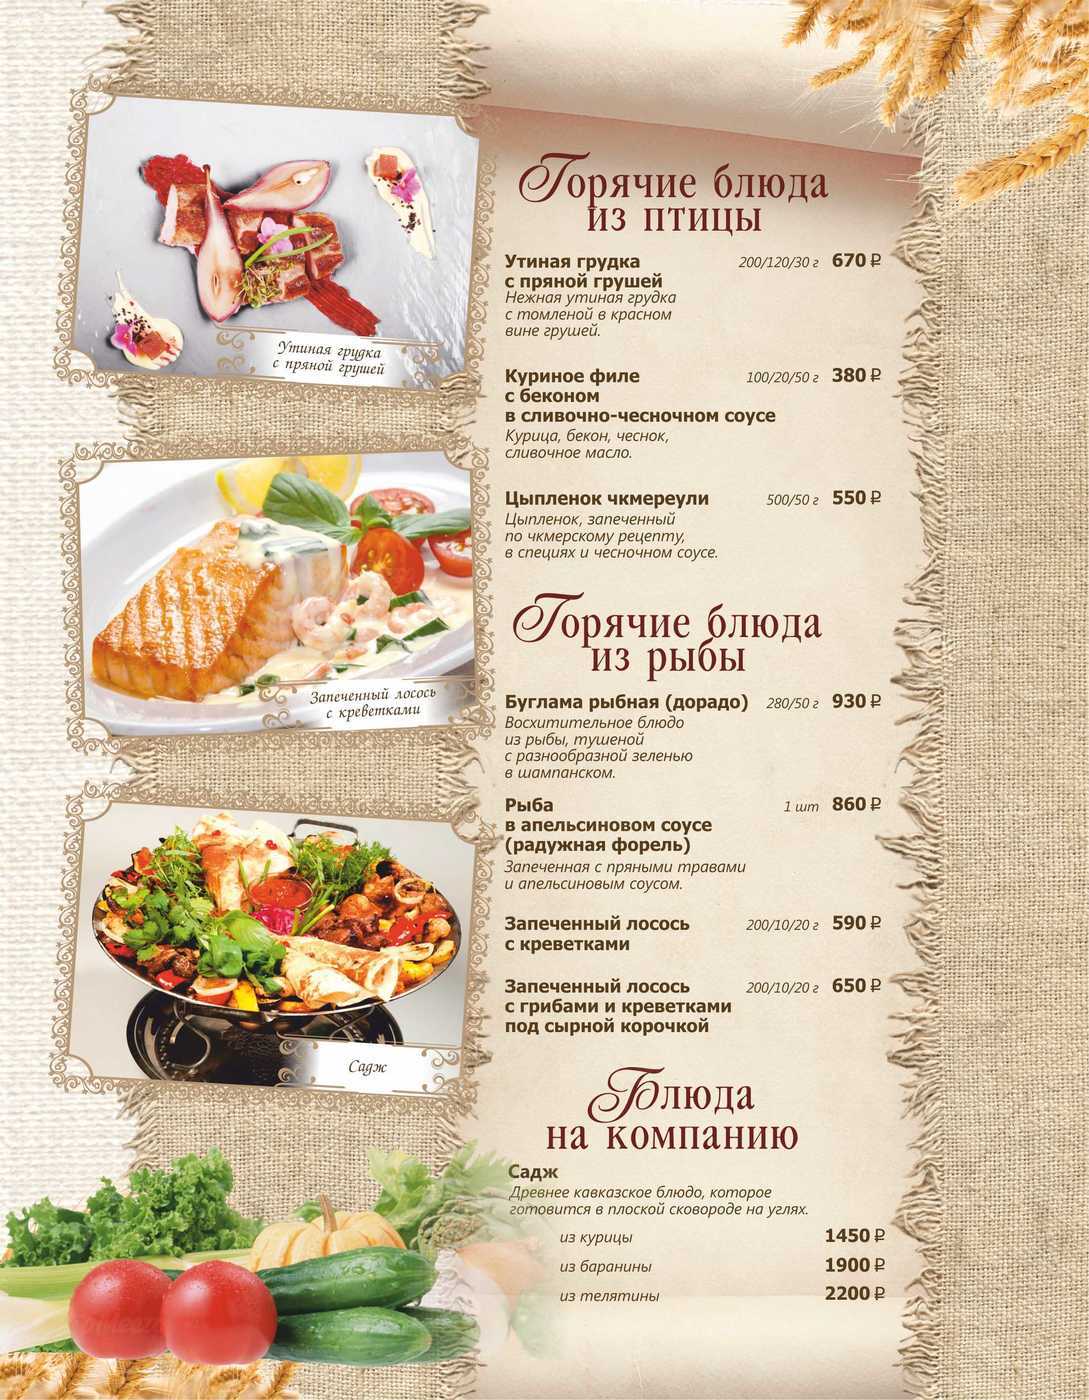 Самые дорогие рестораны спб: список топ-10 лучших мест санкт-петербурга